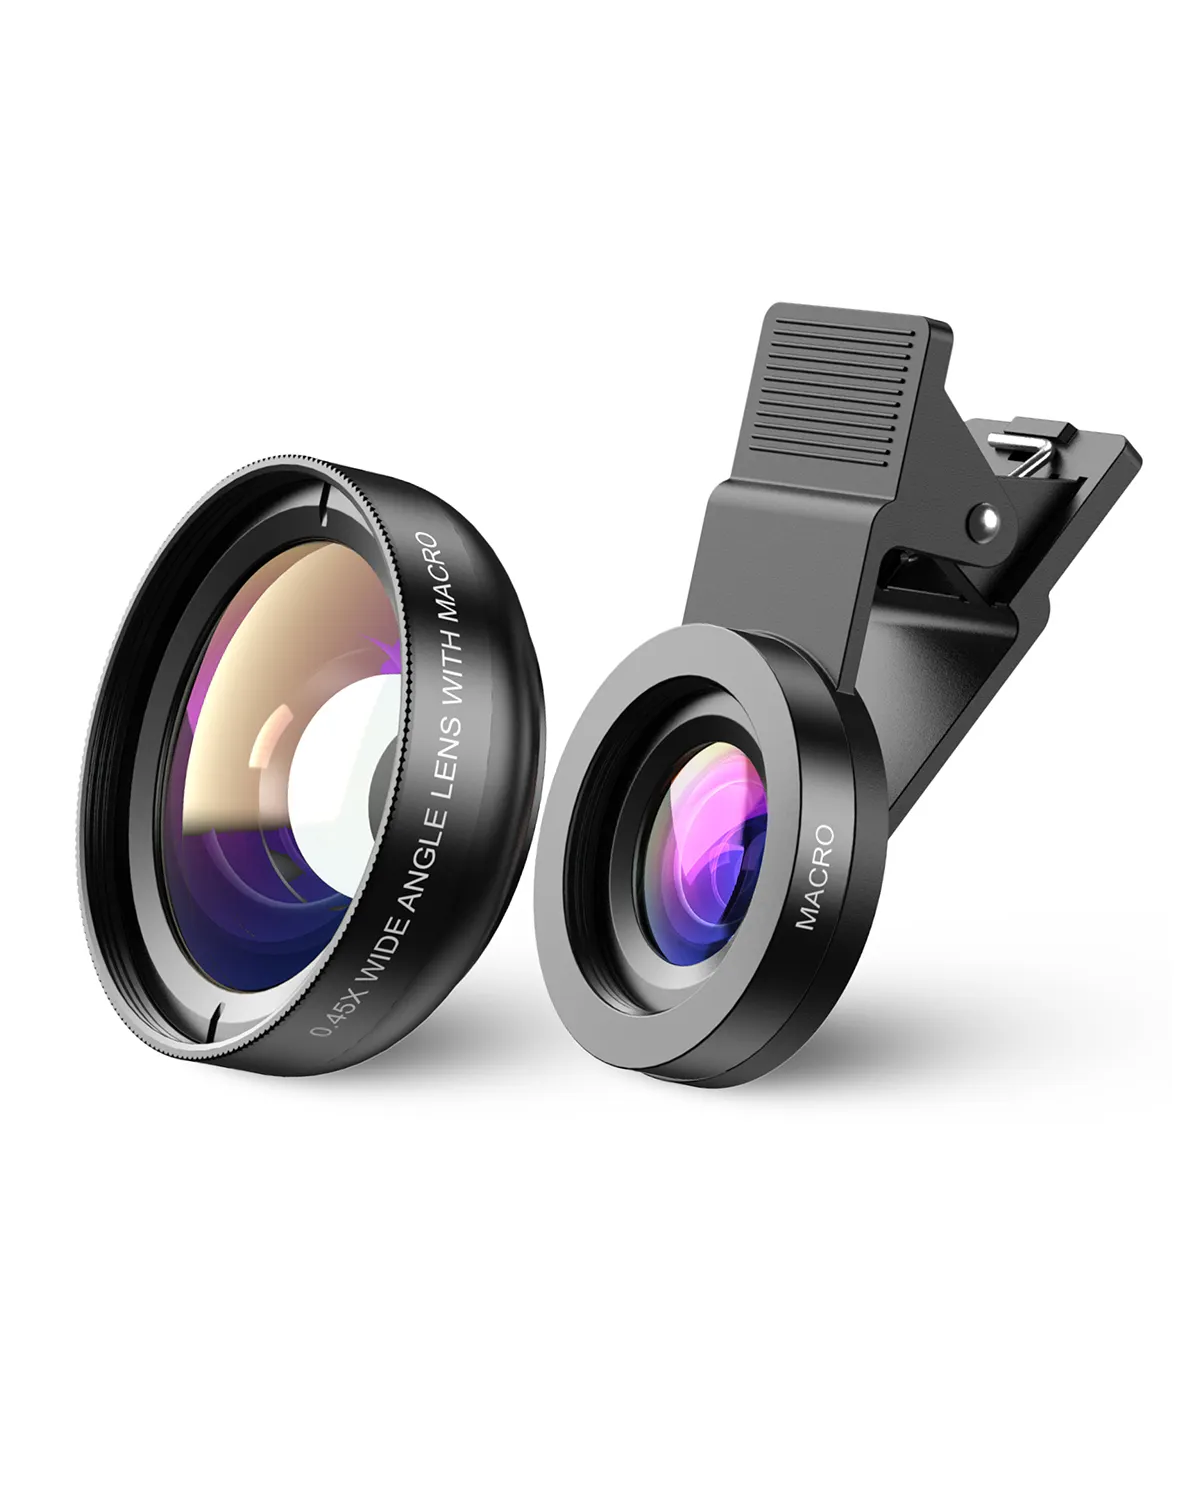 Apexel-Kit de lentes 2 en 1 con Clip gran angular 0,45, gran angular de 0.45x, lente Macro para cámara de teléfono móvil, 15x